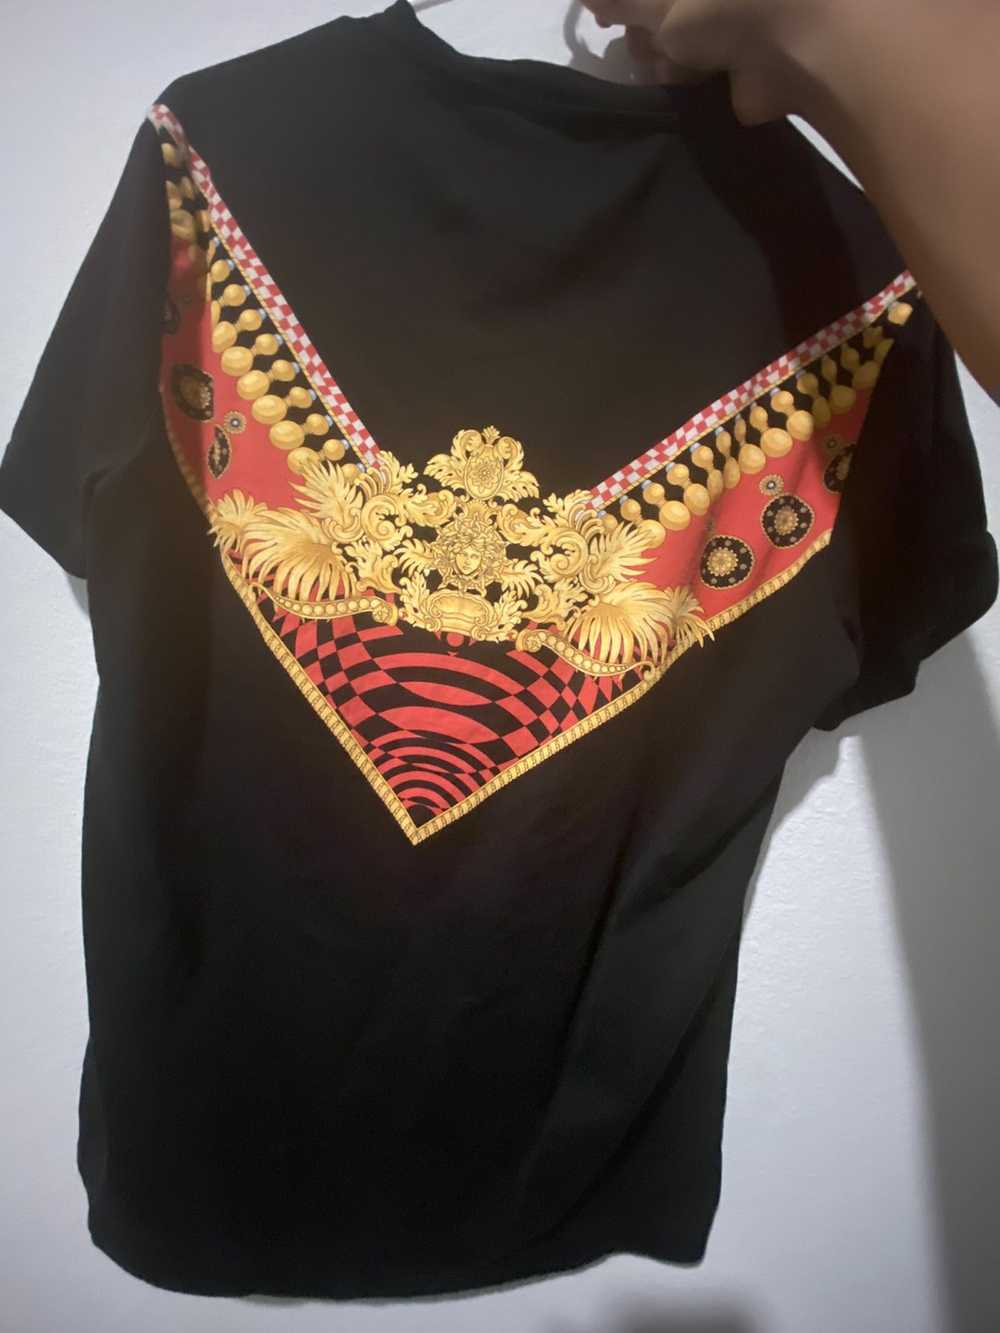 Versace Versace baroque t shirt - image 2